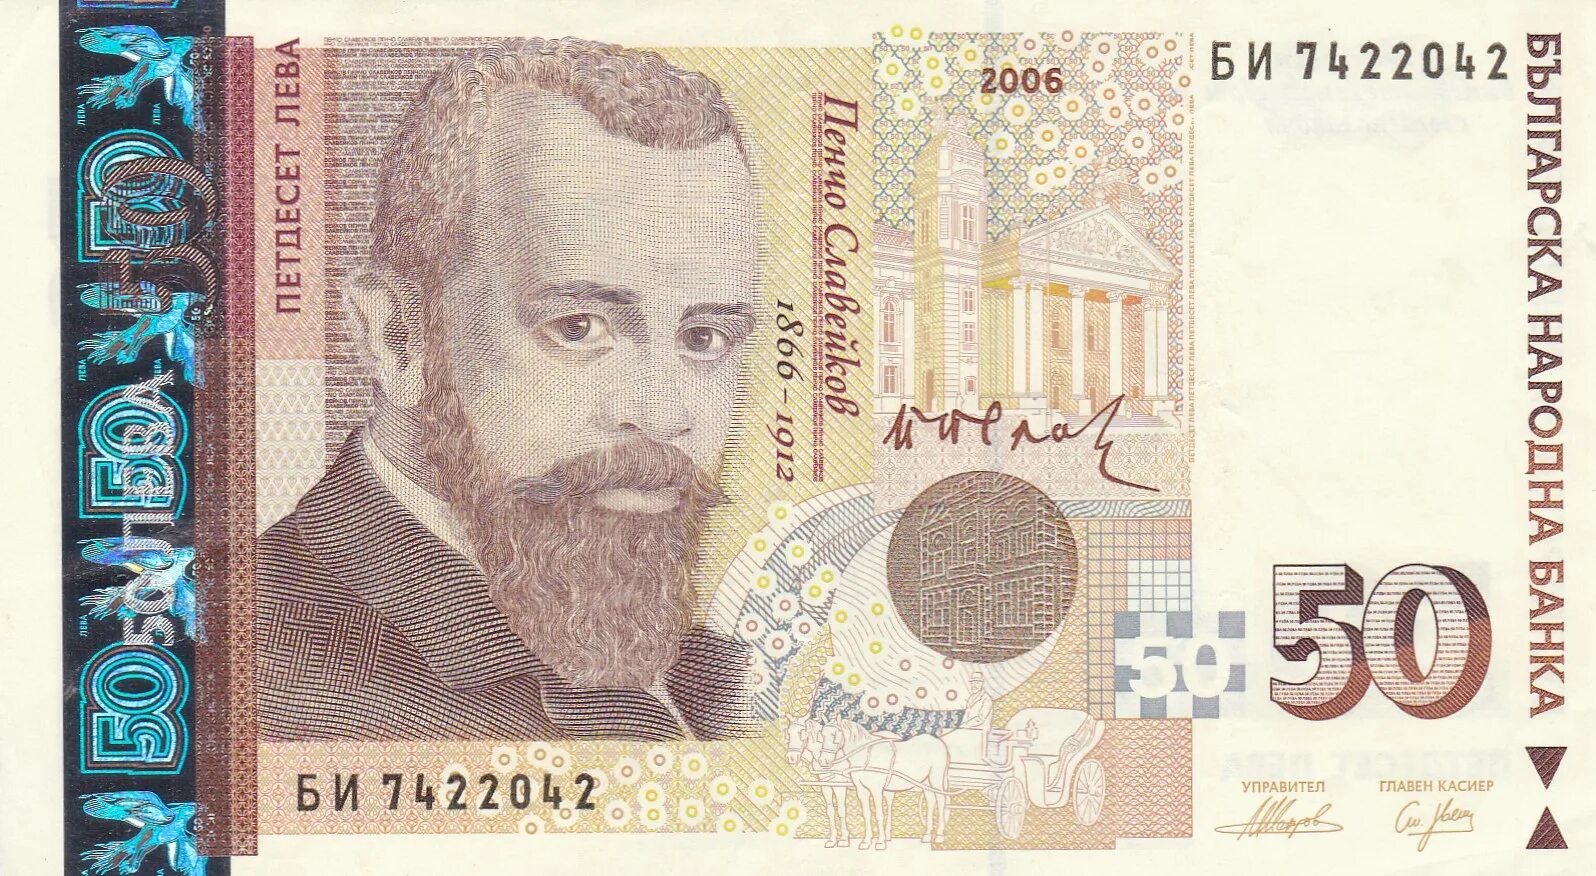 Лев денежная единица. Болгария 50 левов 2006 БМ UNC. Болгарский Лев. Болгарский Лев банкноты. Национальная валюта Болгарии.